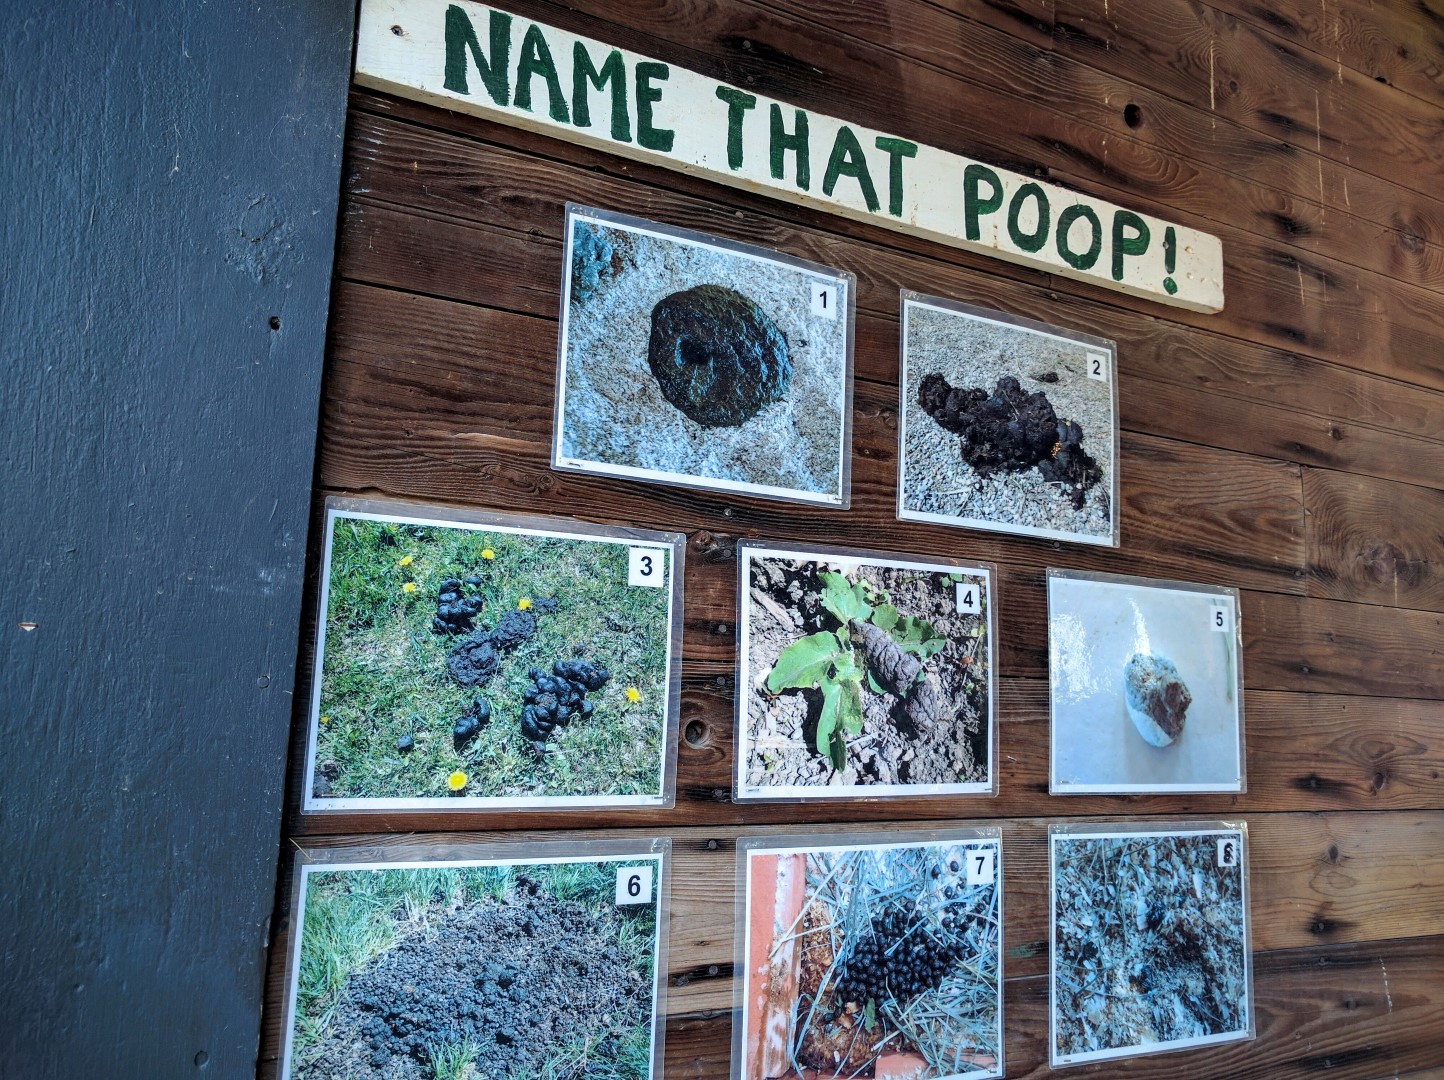 Name that Poop!